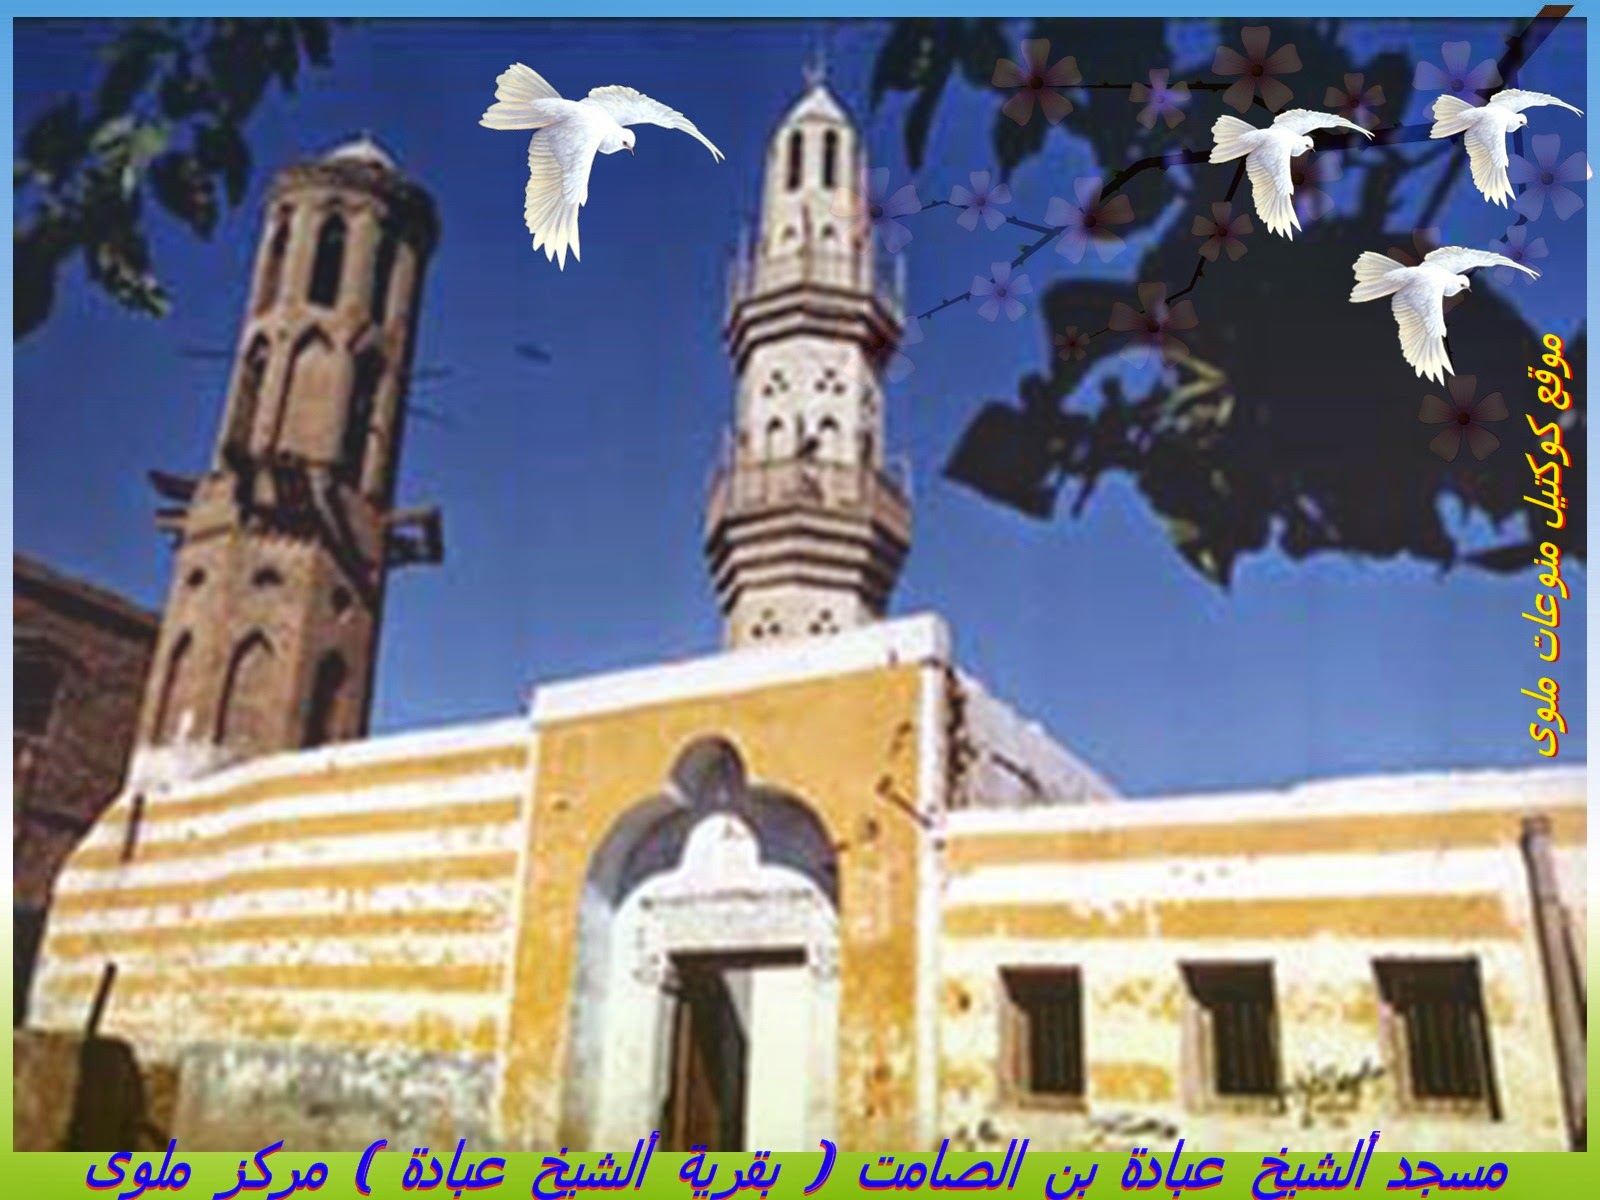 مسجد ألشيخ عبادة بن الصامت بقرية ألشيخ عبادة مركز ملوى